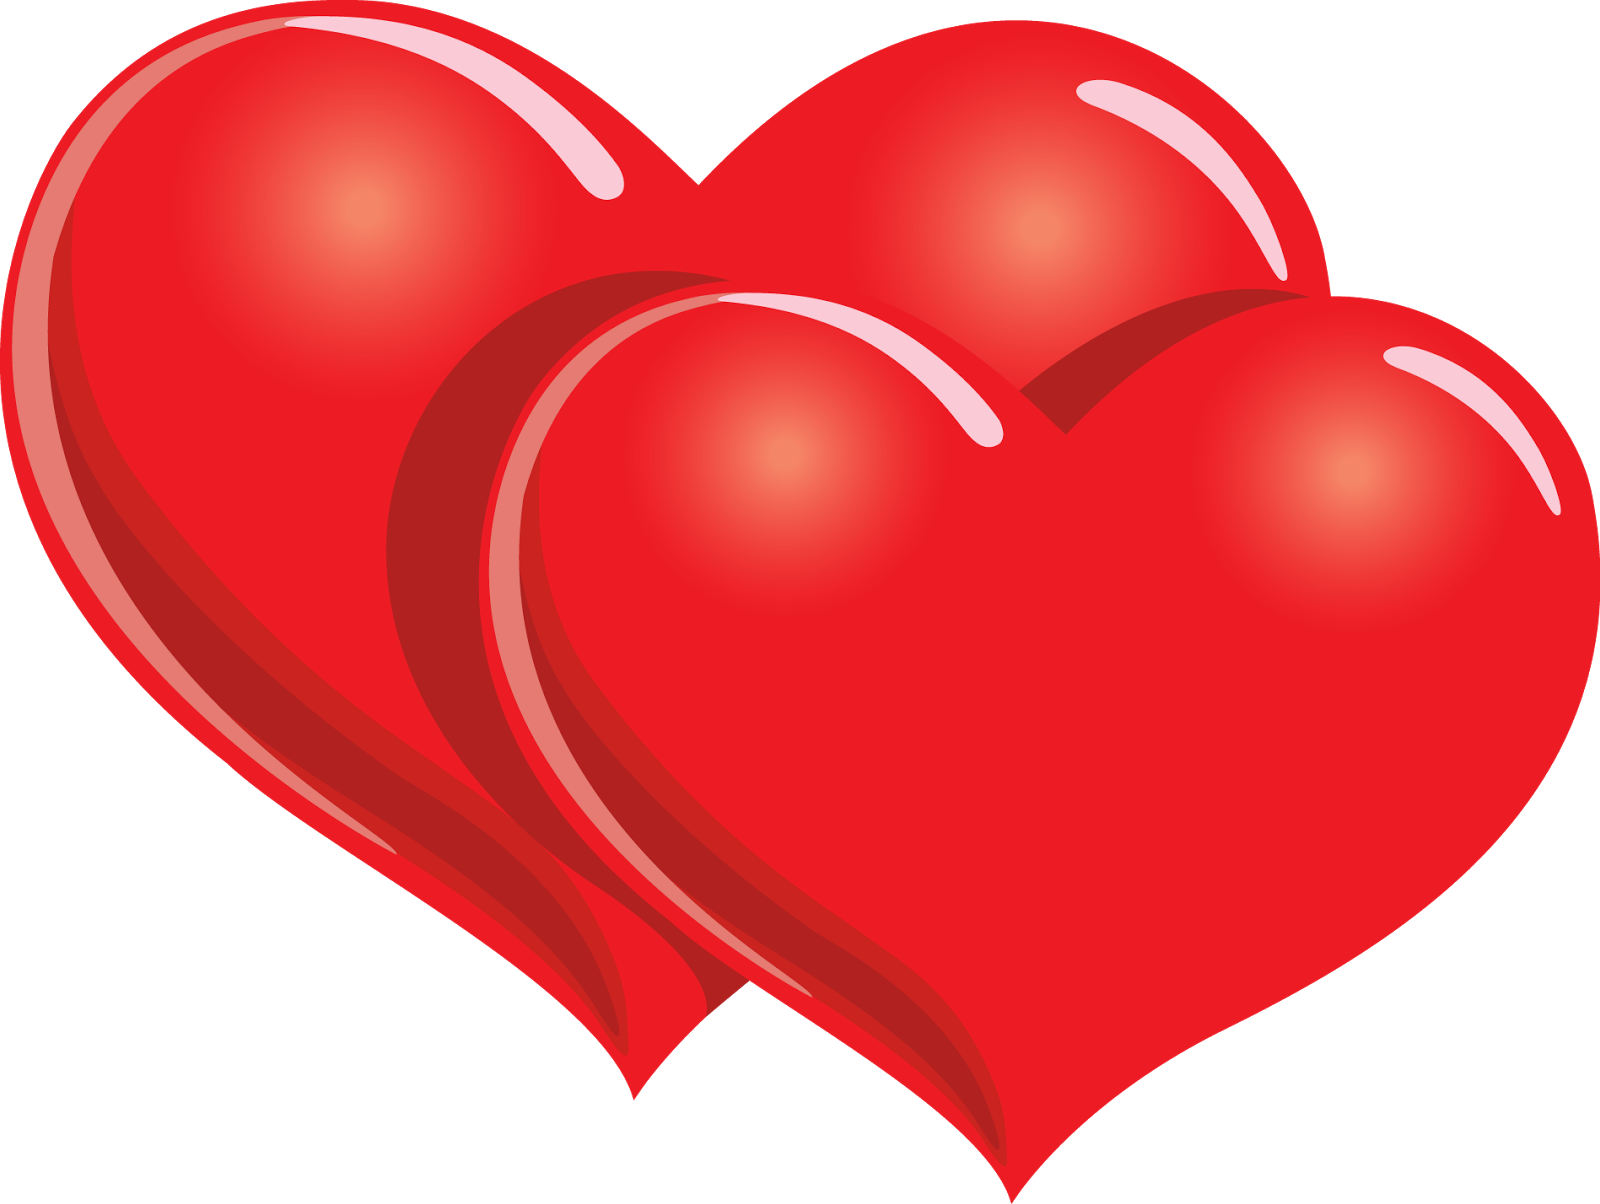 Heart In Love Wallpaper HD  PixelsTalkNet